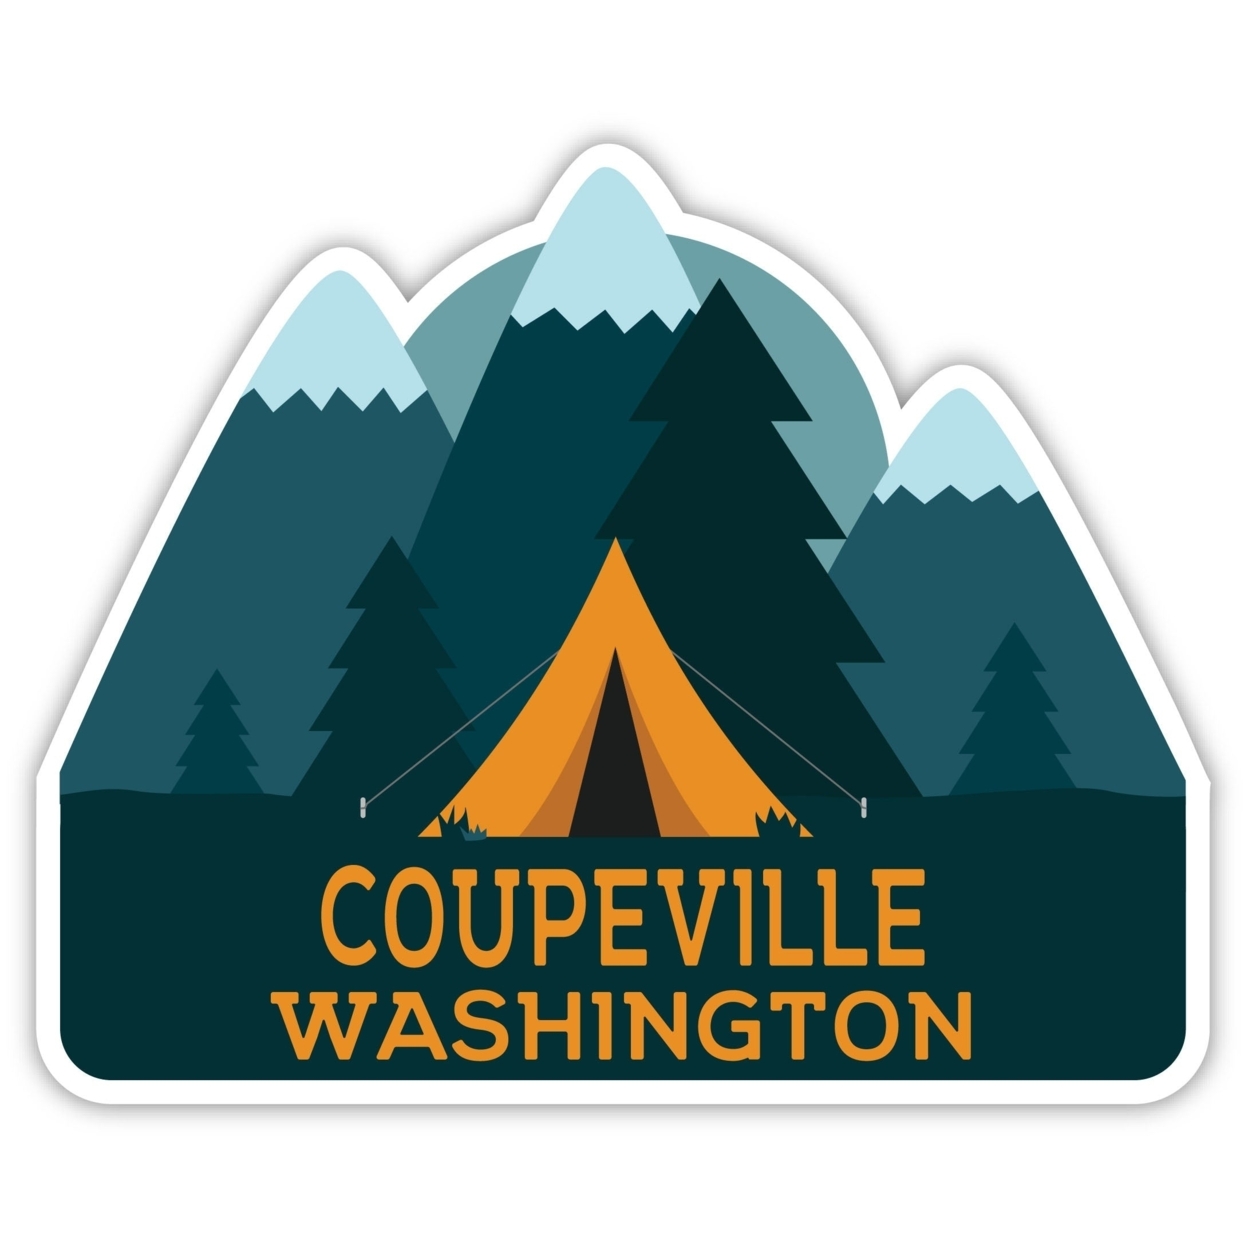 Coupeville Washington Souvenir Decorative Stickers (Choose Theme And Size) - Single Unit, 12-Inch, Tent